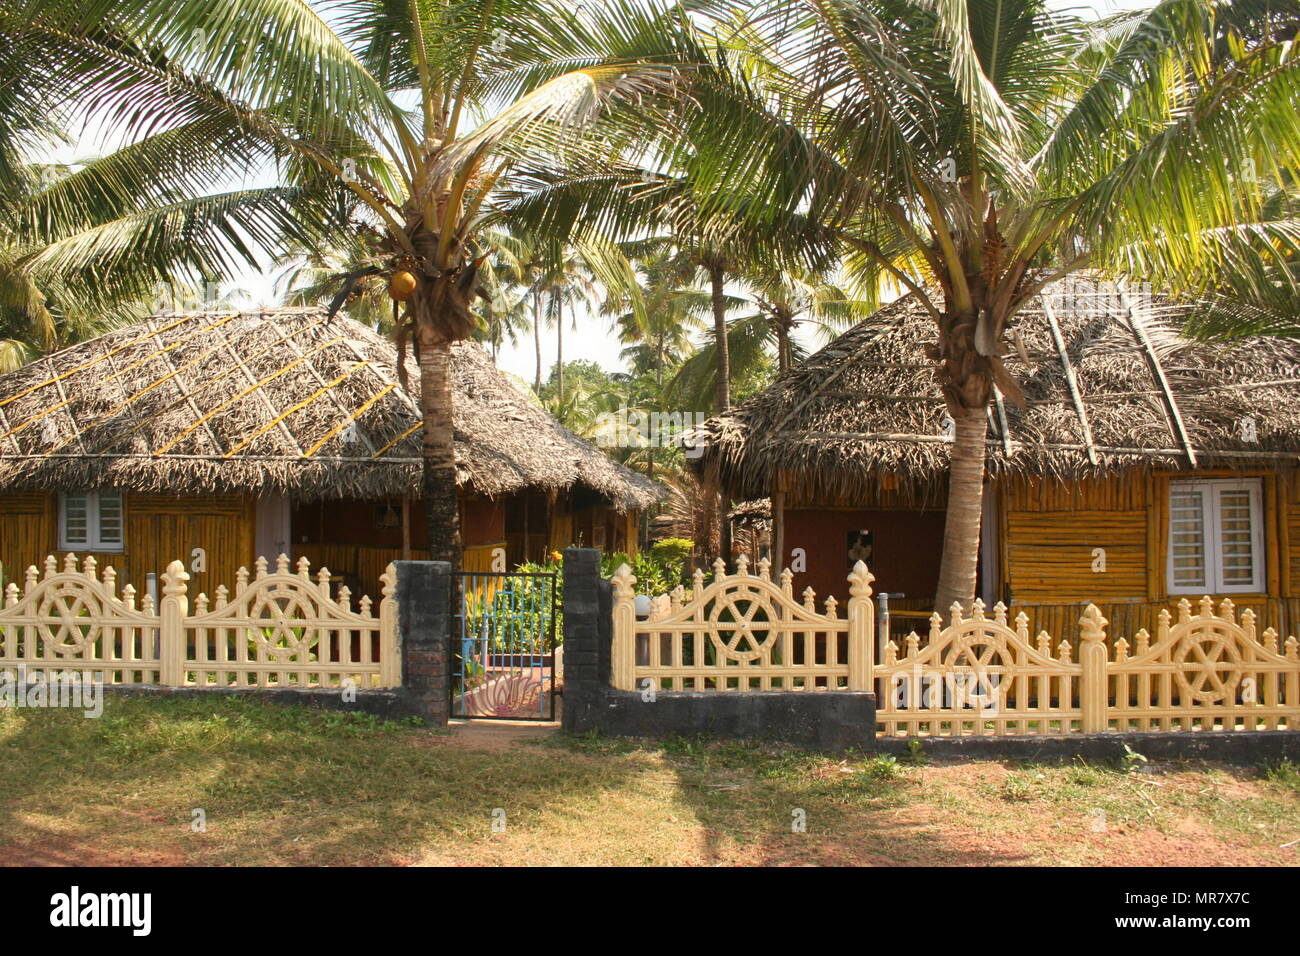 Les huttes au toit de chaume, les piquets de clôture et palmiers, Varkala, Inde Banque D'Images